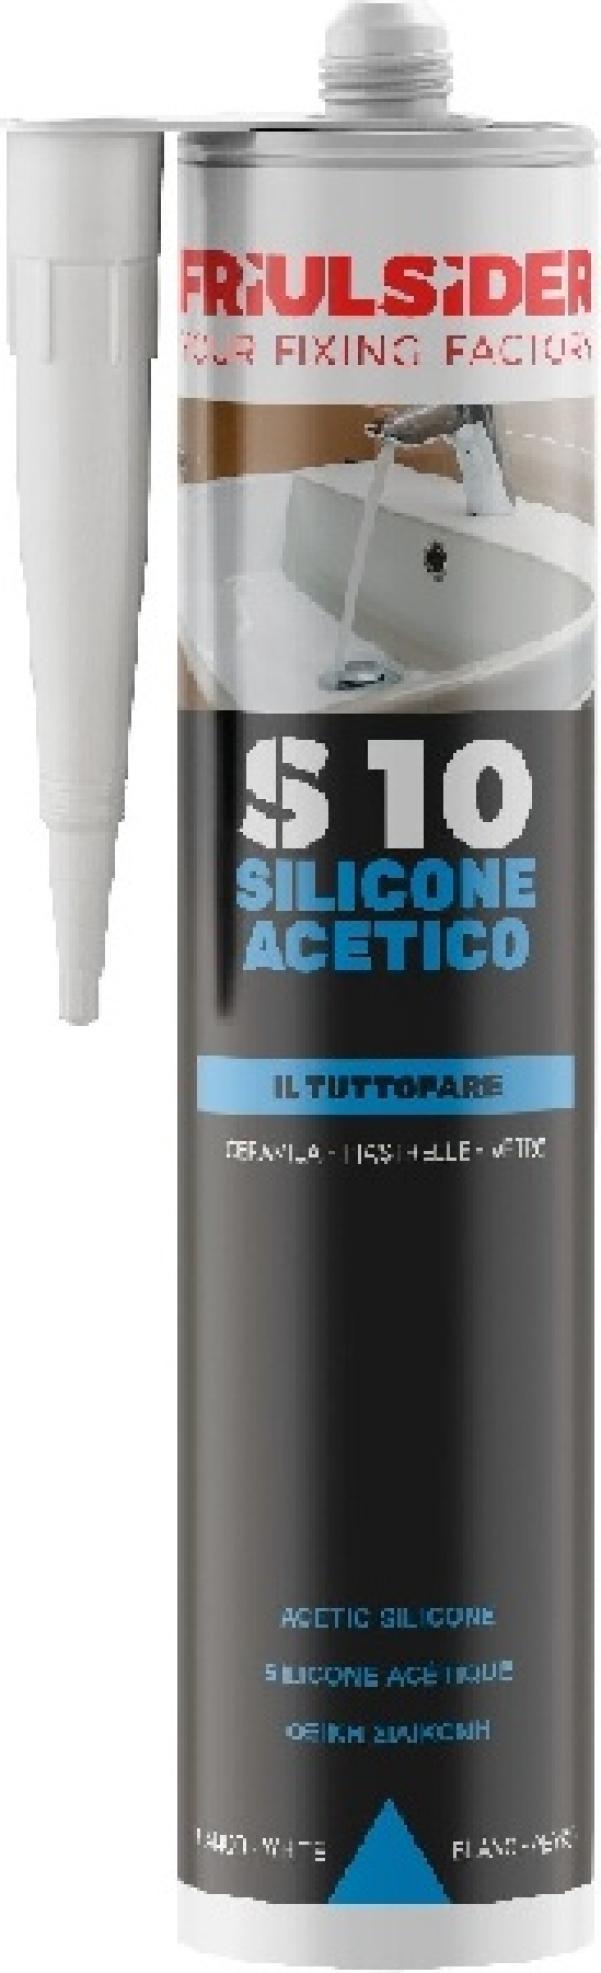 Silicone acetico bianco ral9010 280 ml Friulsider S1001